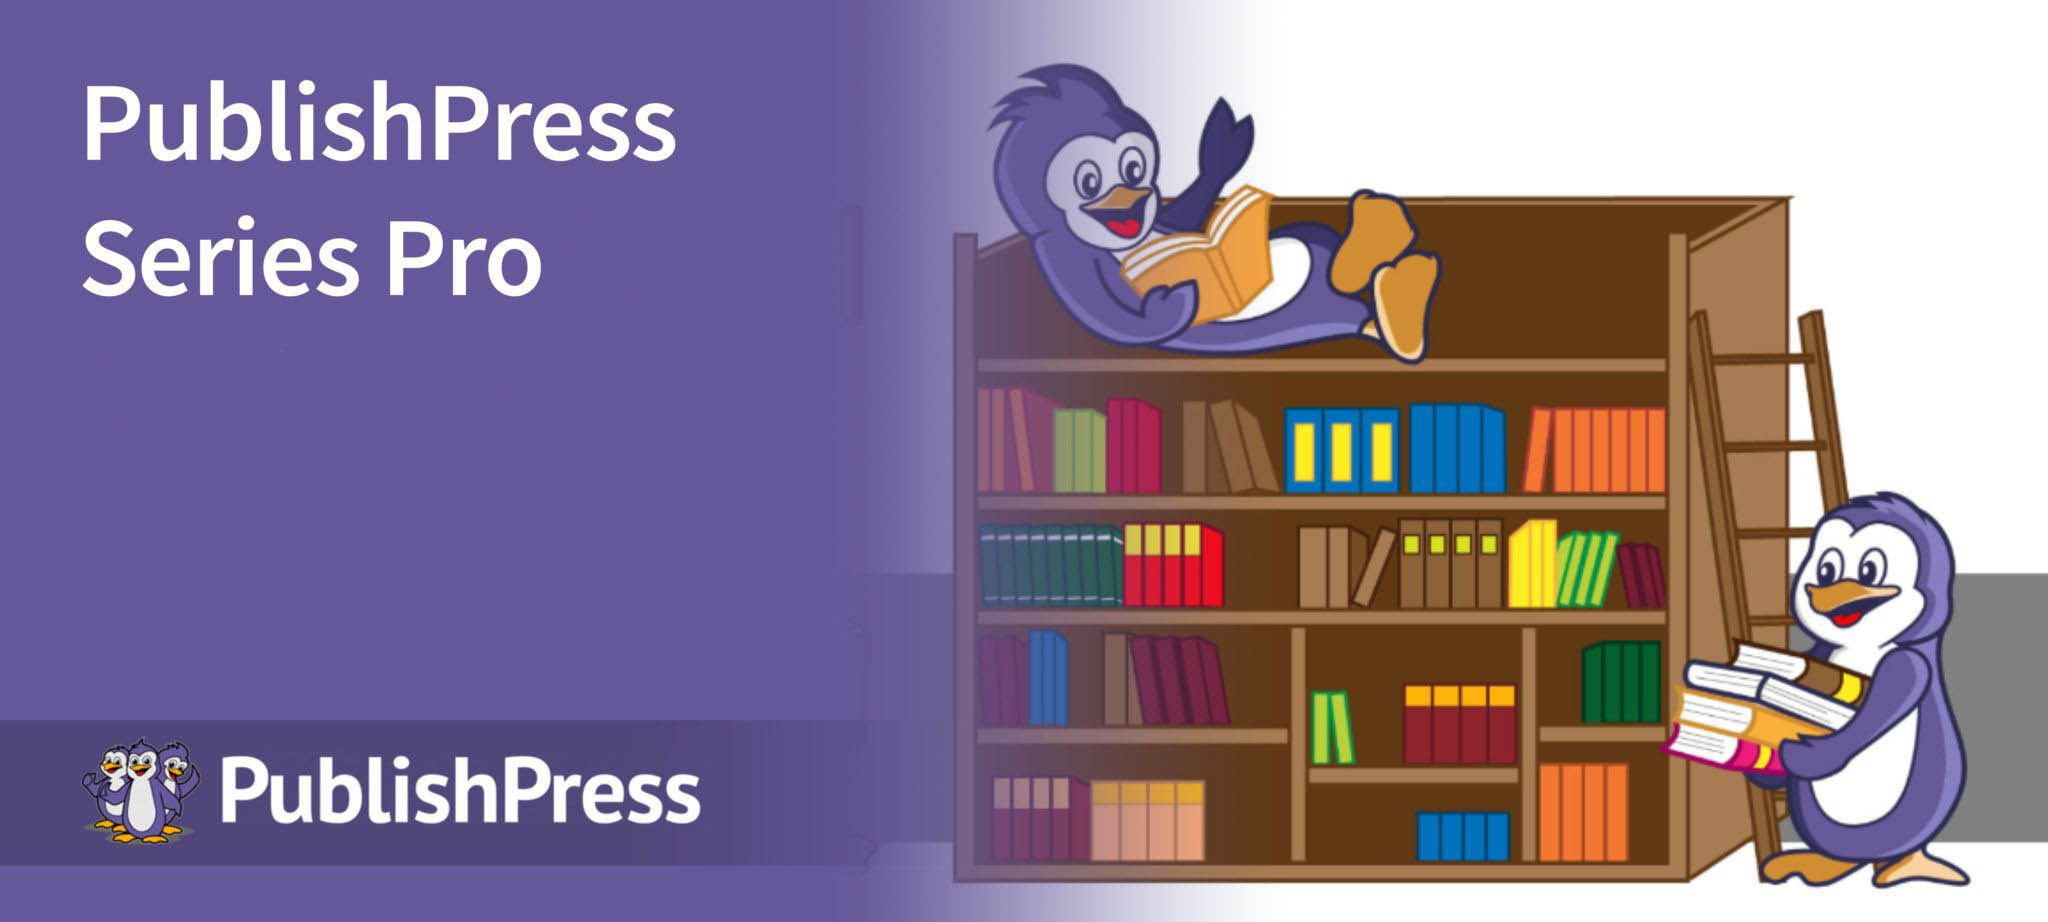 دانلود افزونه PublishPress Series Pro برای وردپرس